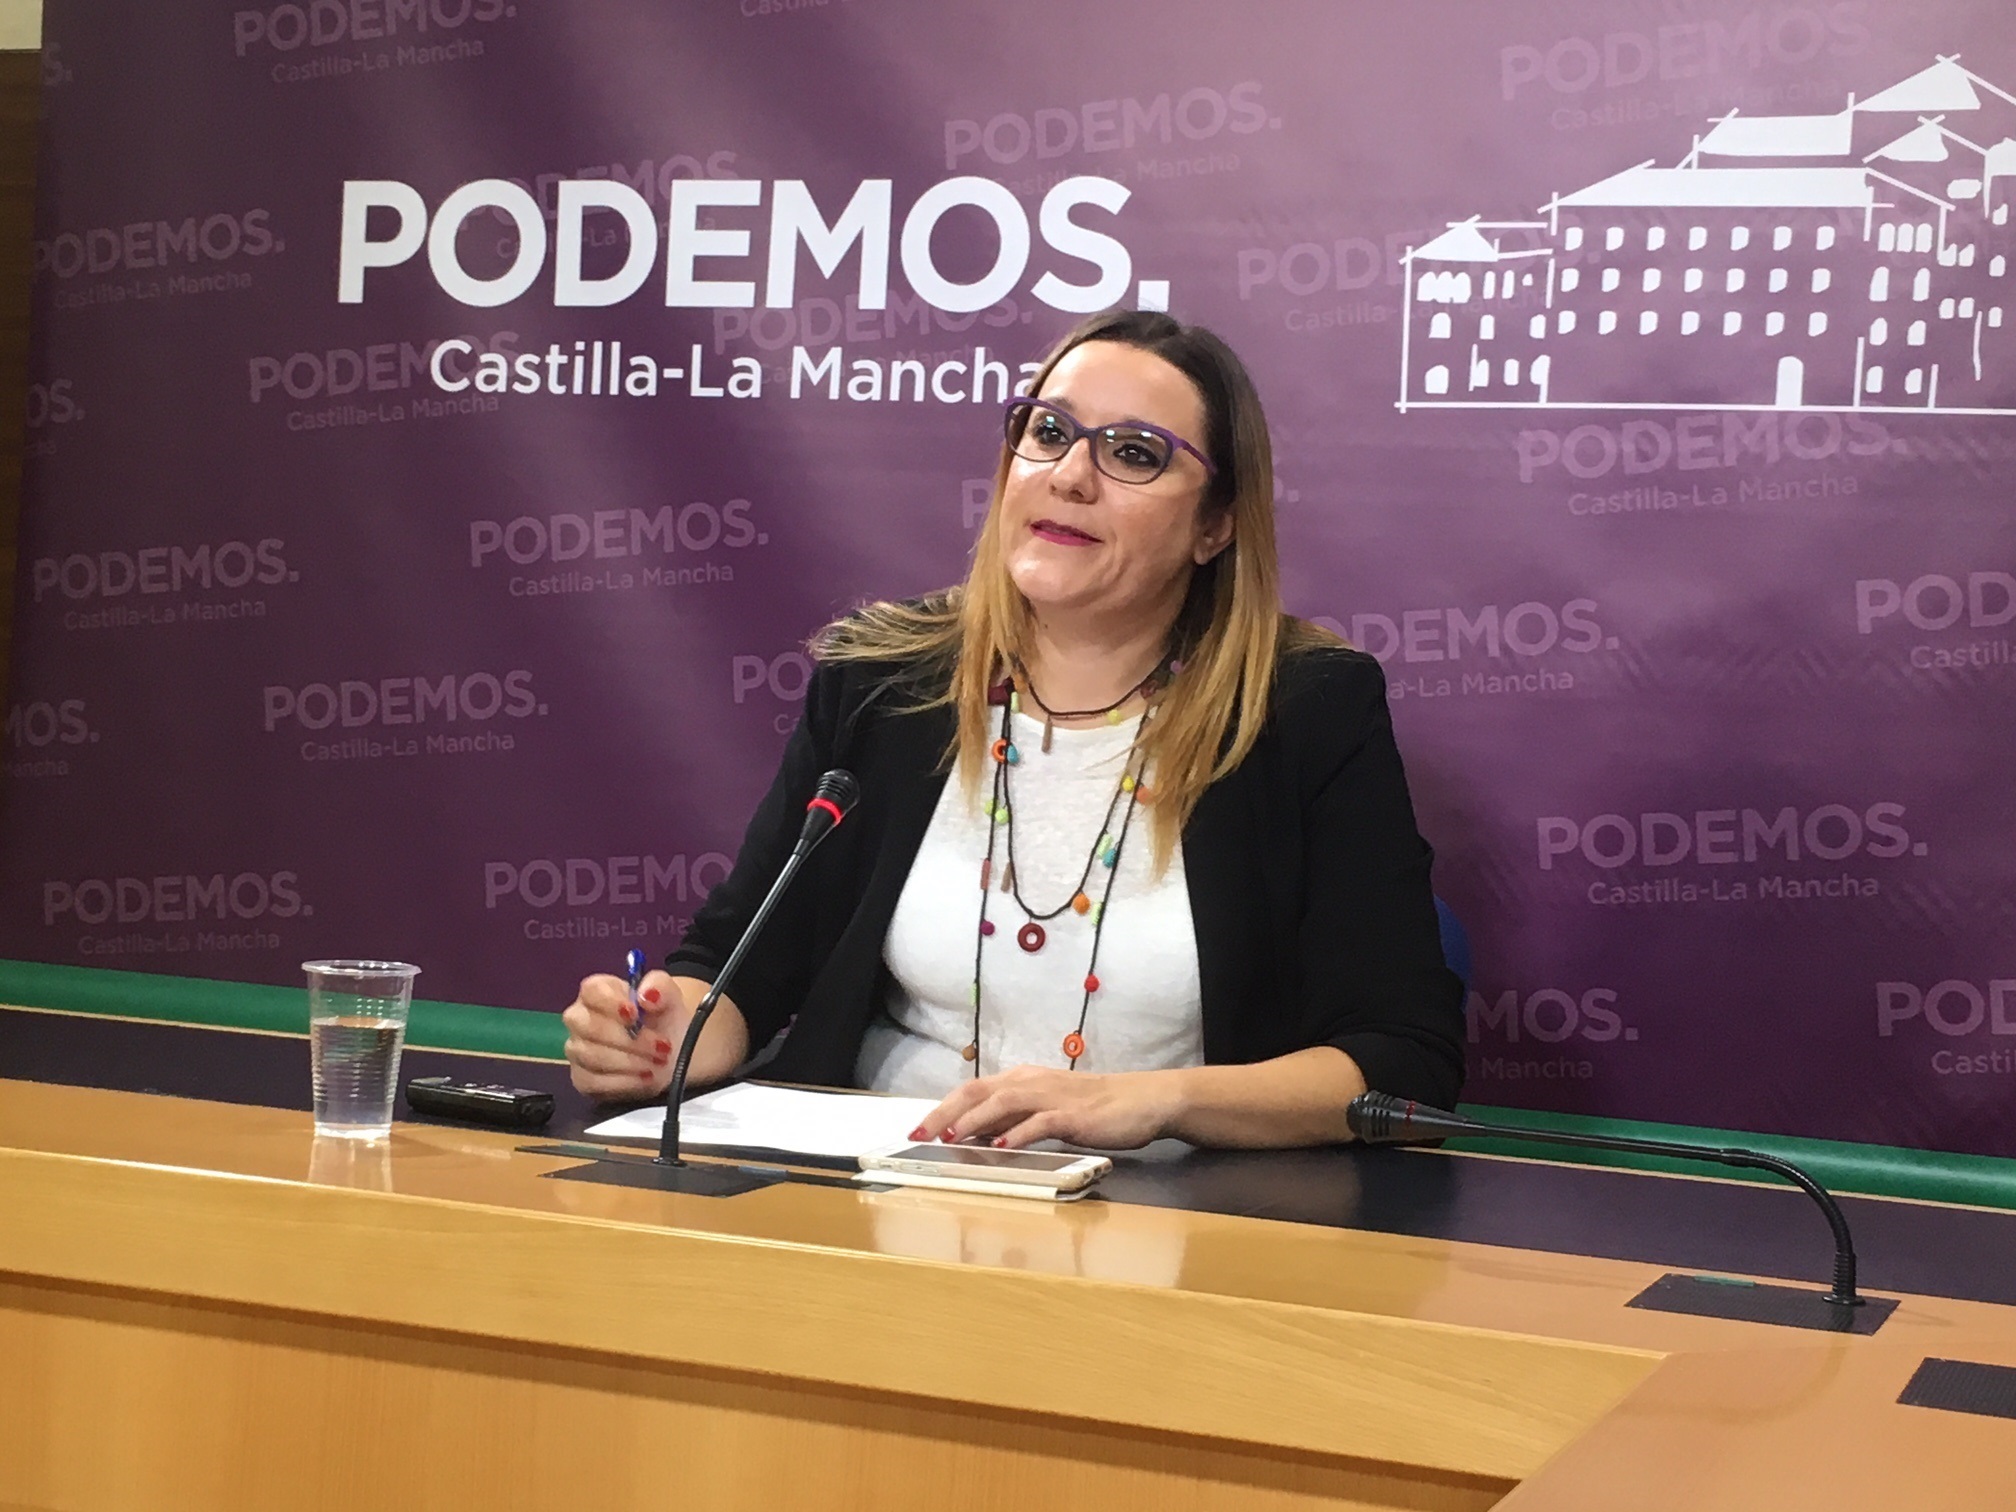 Podemos C-LM pide diálogo, cree que con Rajoy “no hay solución” y asegura que no defienden la independencia